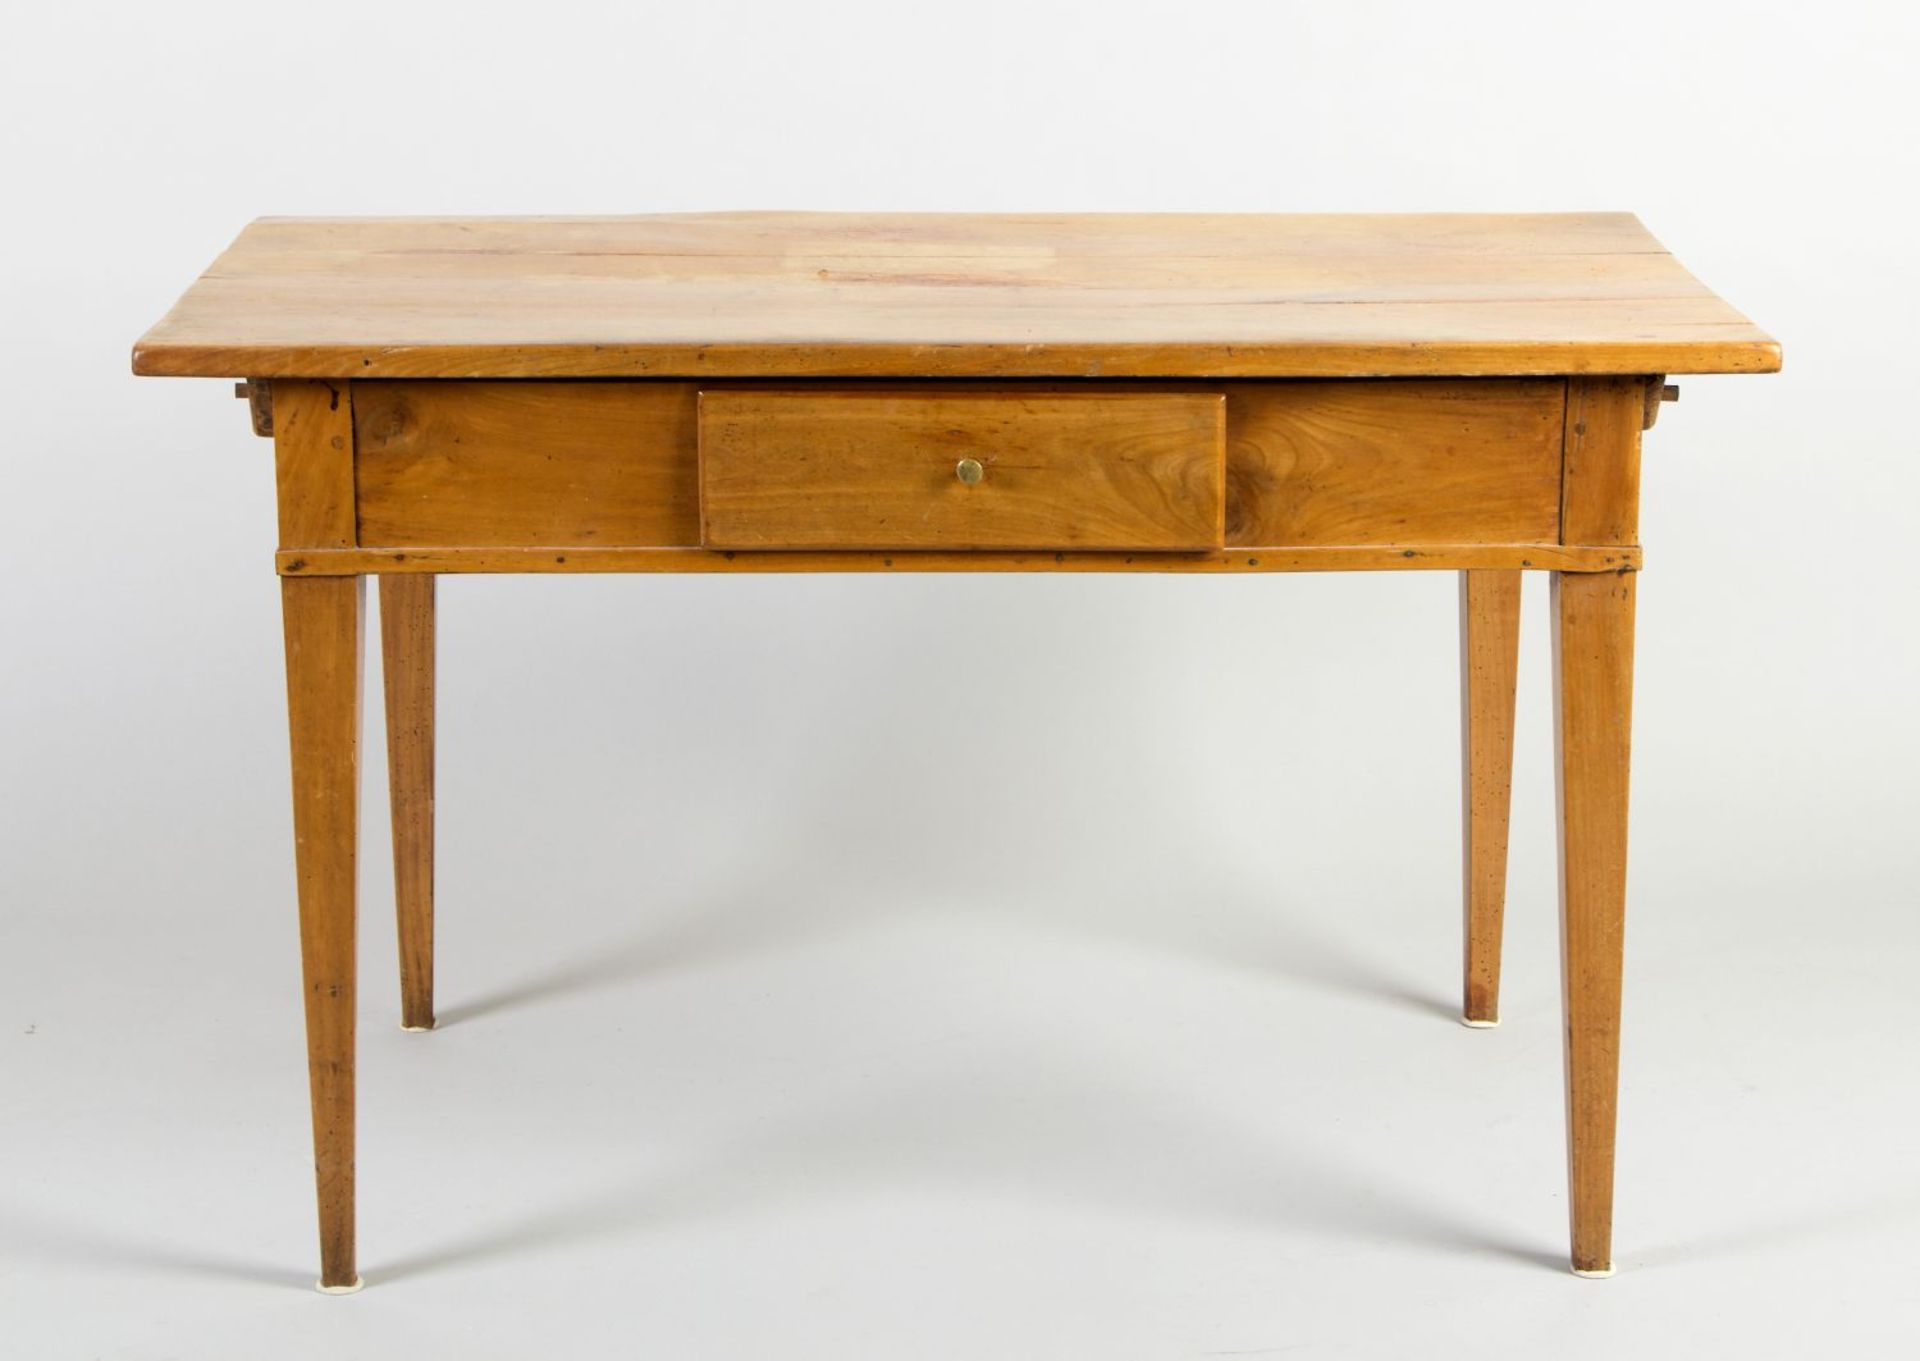 Tisch. Kirschbaum. Verjüngte Vierkantbeine. Zarge mit Schub. Anf. 19. Jh. 73 x 117 x 66 cm. Besc